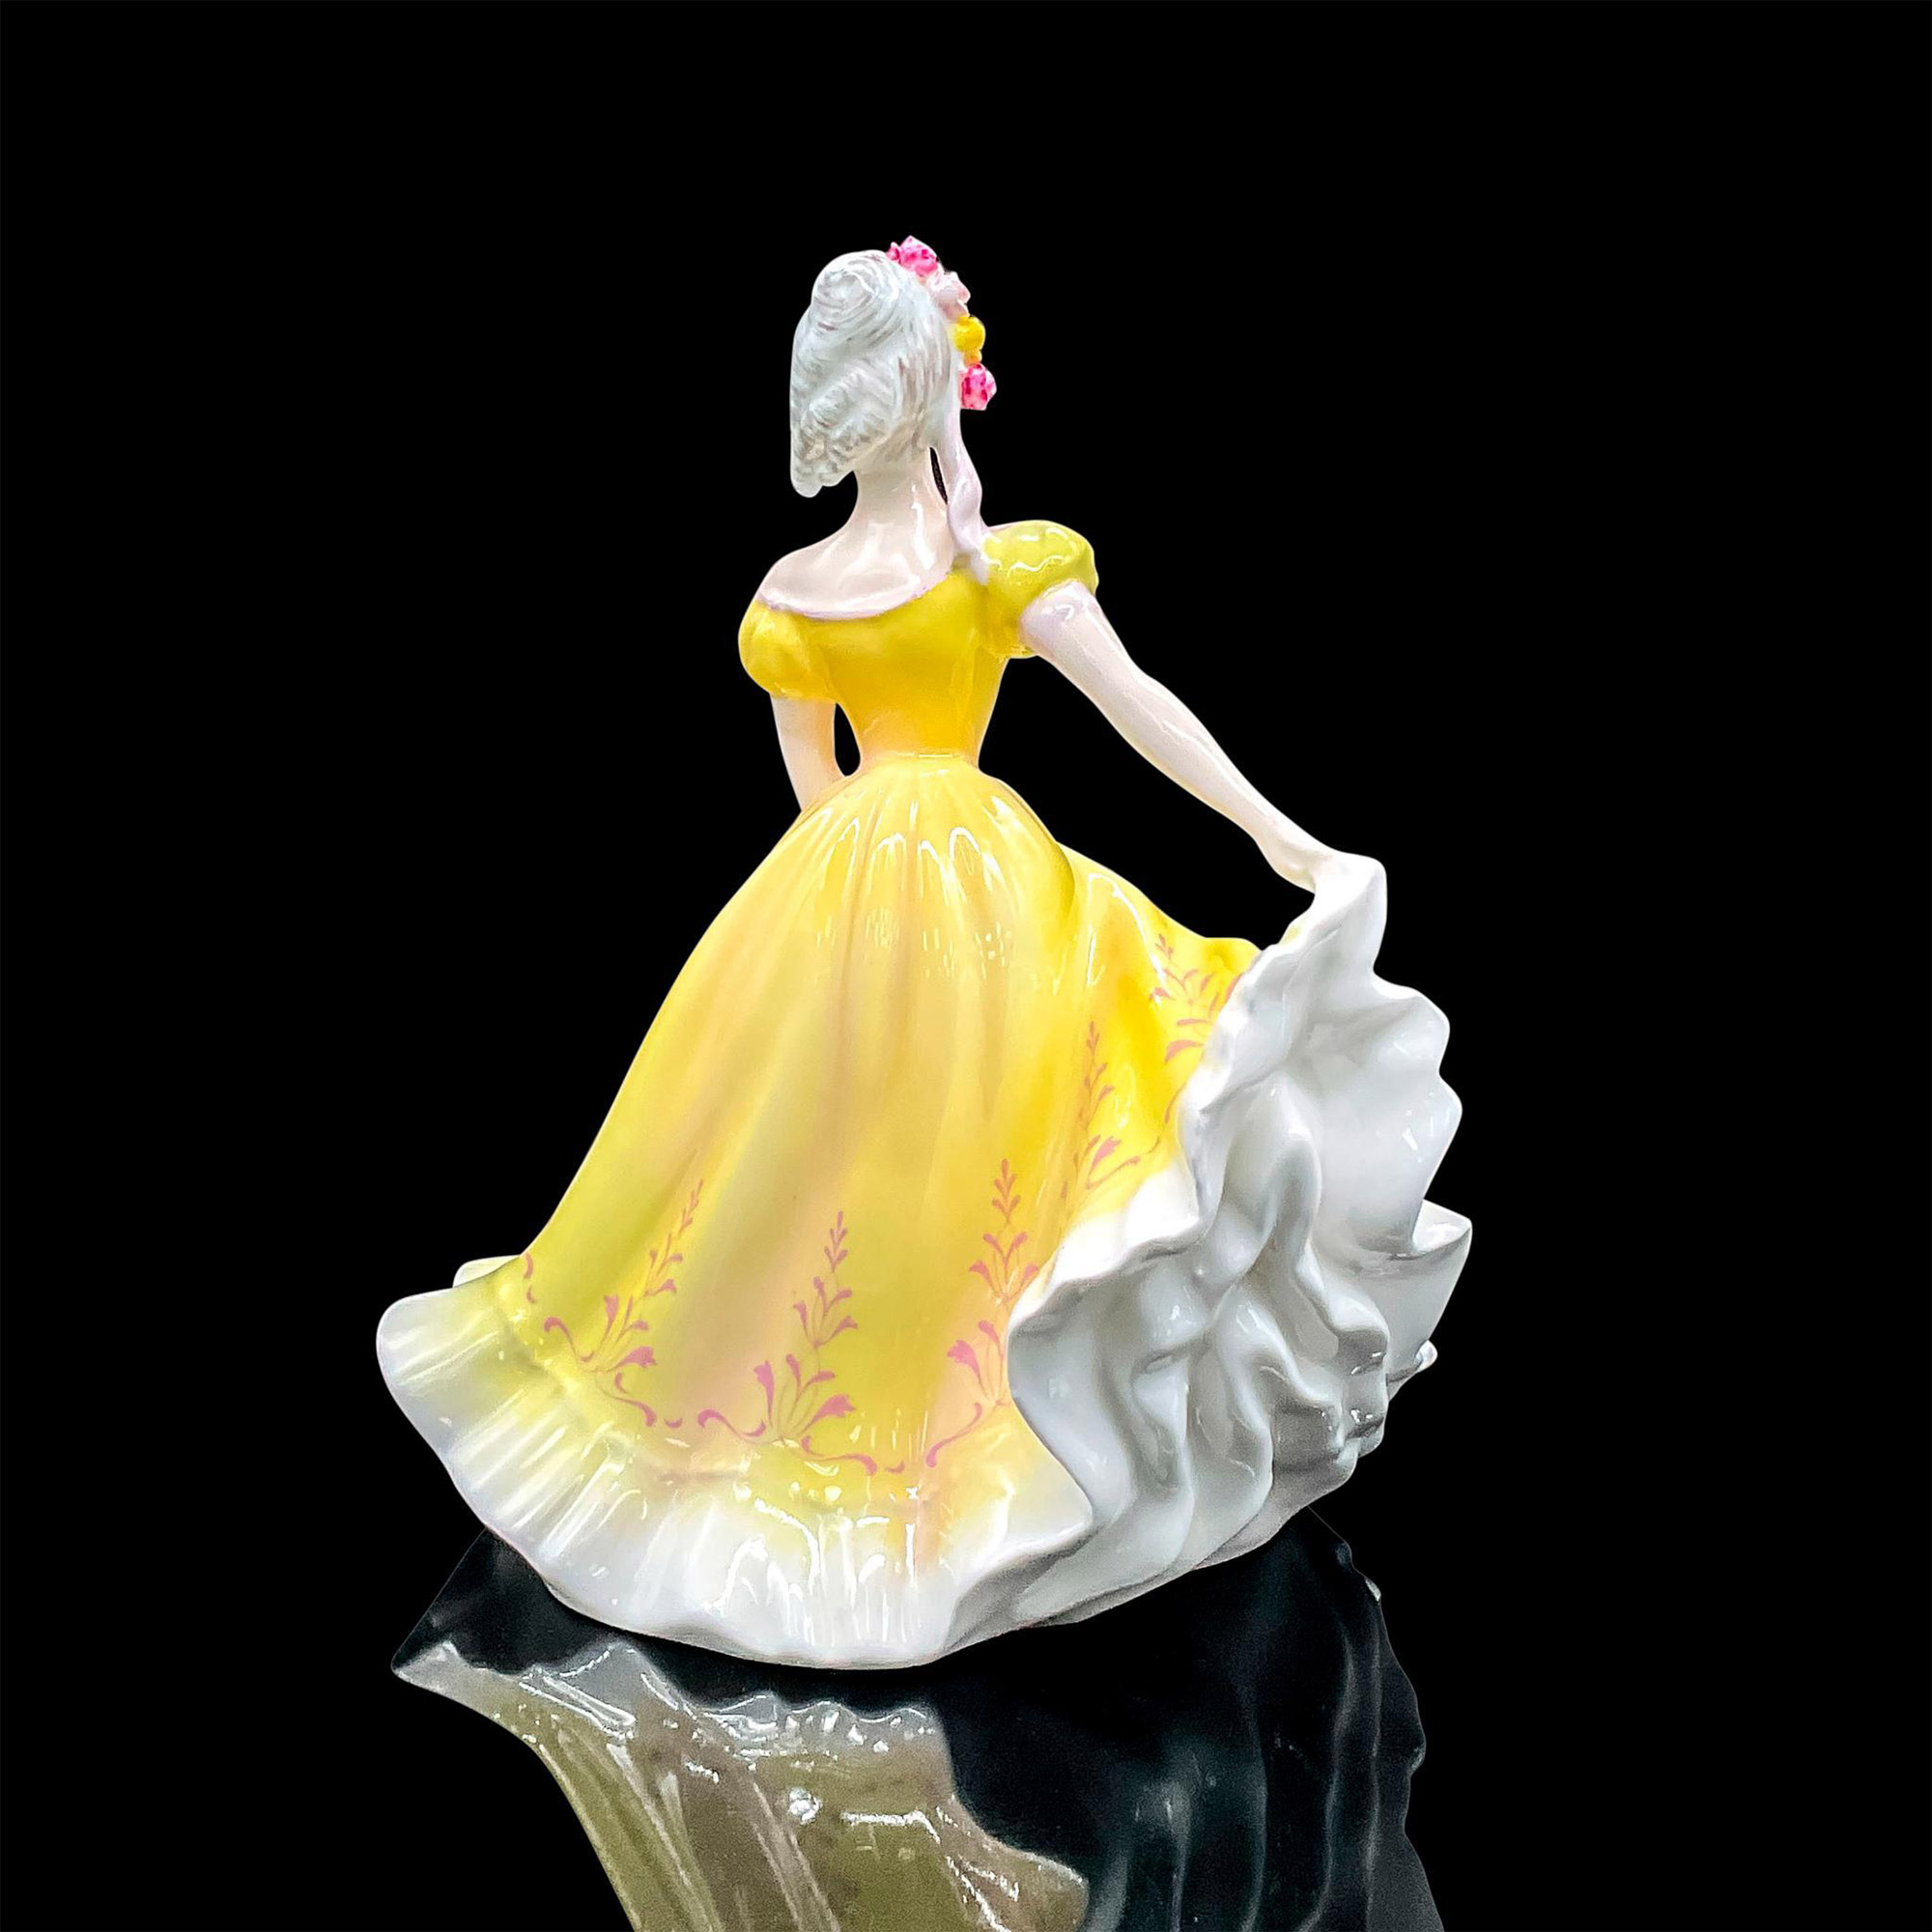 Ninette - HN2379 - Royal Doulton Figurine - Image 2 of 3